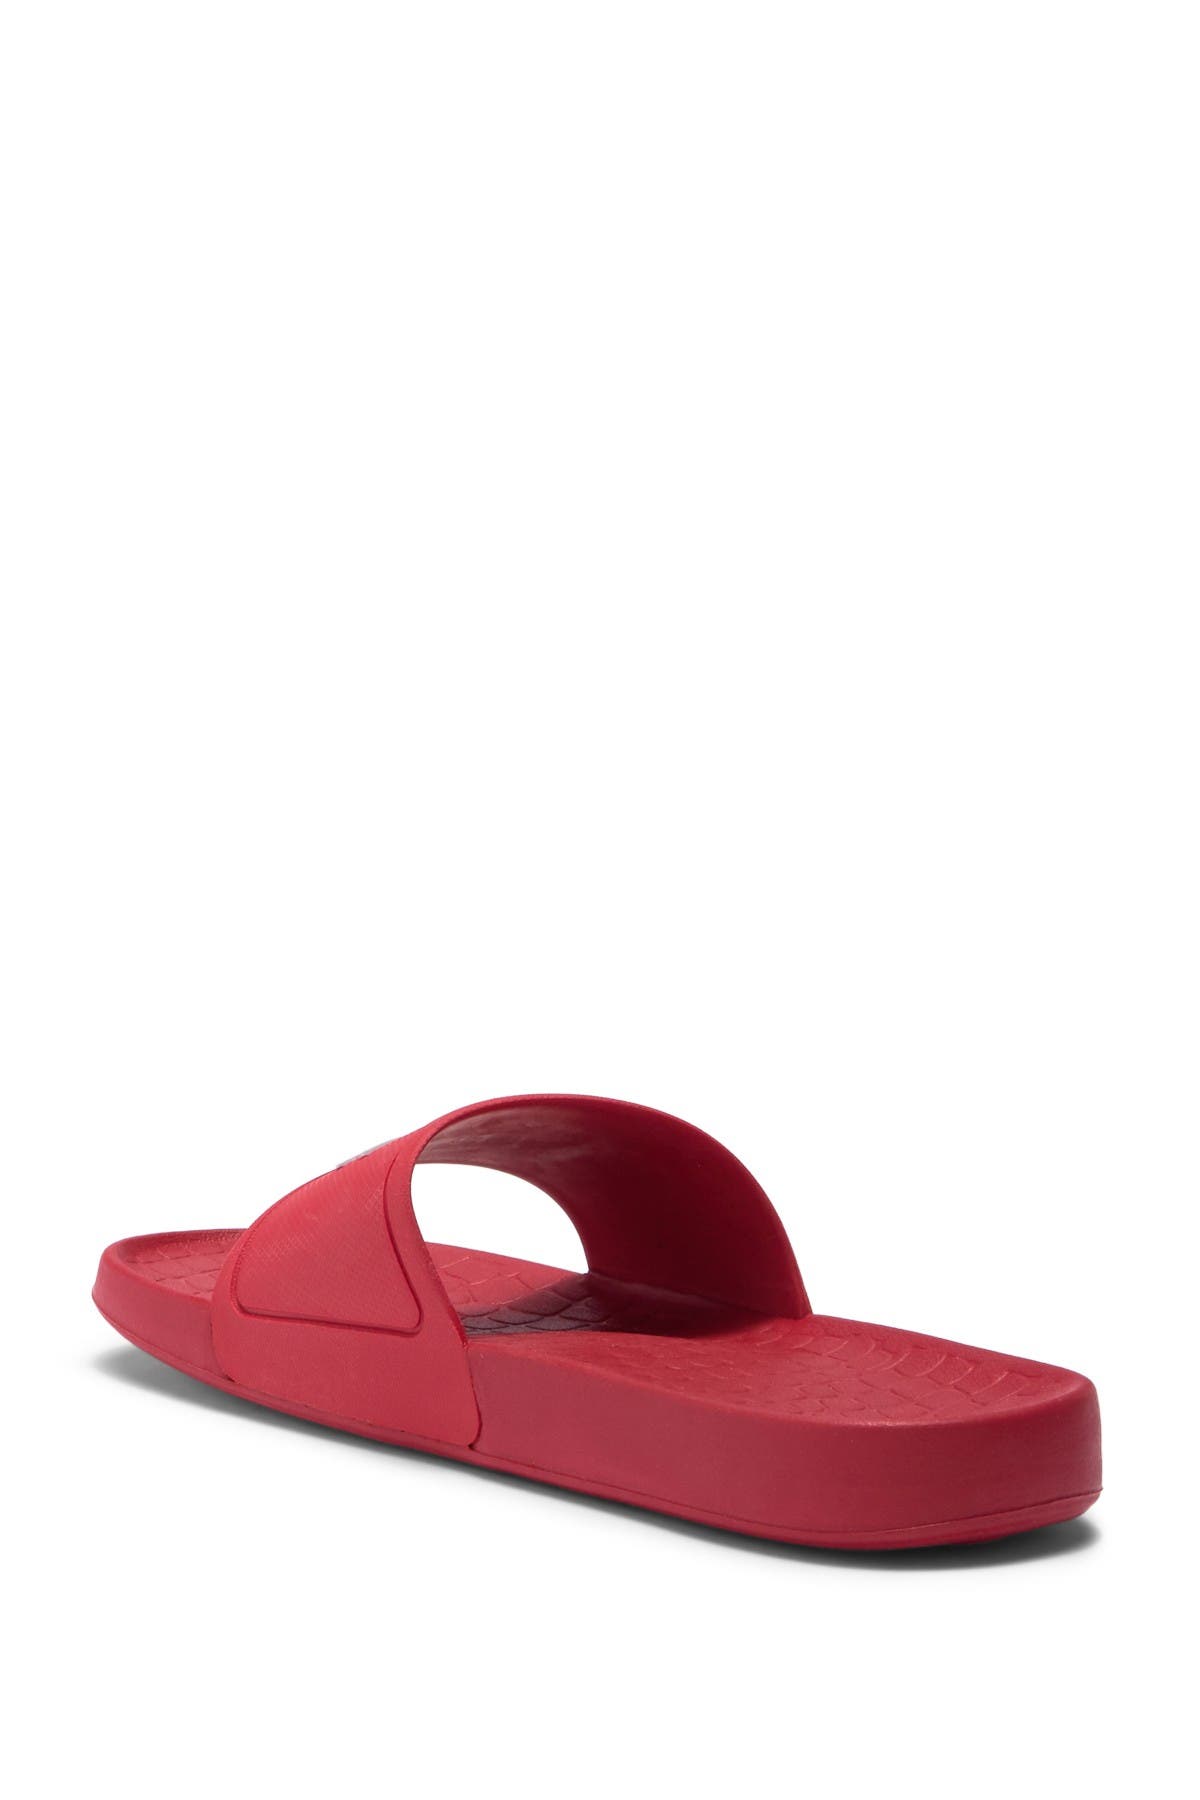 lacoste fraisier 318 1 slide sandal